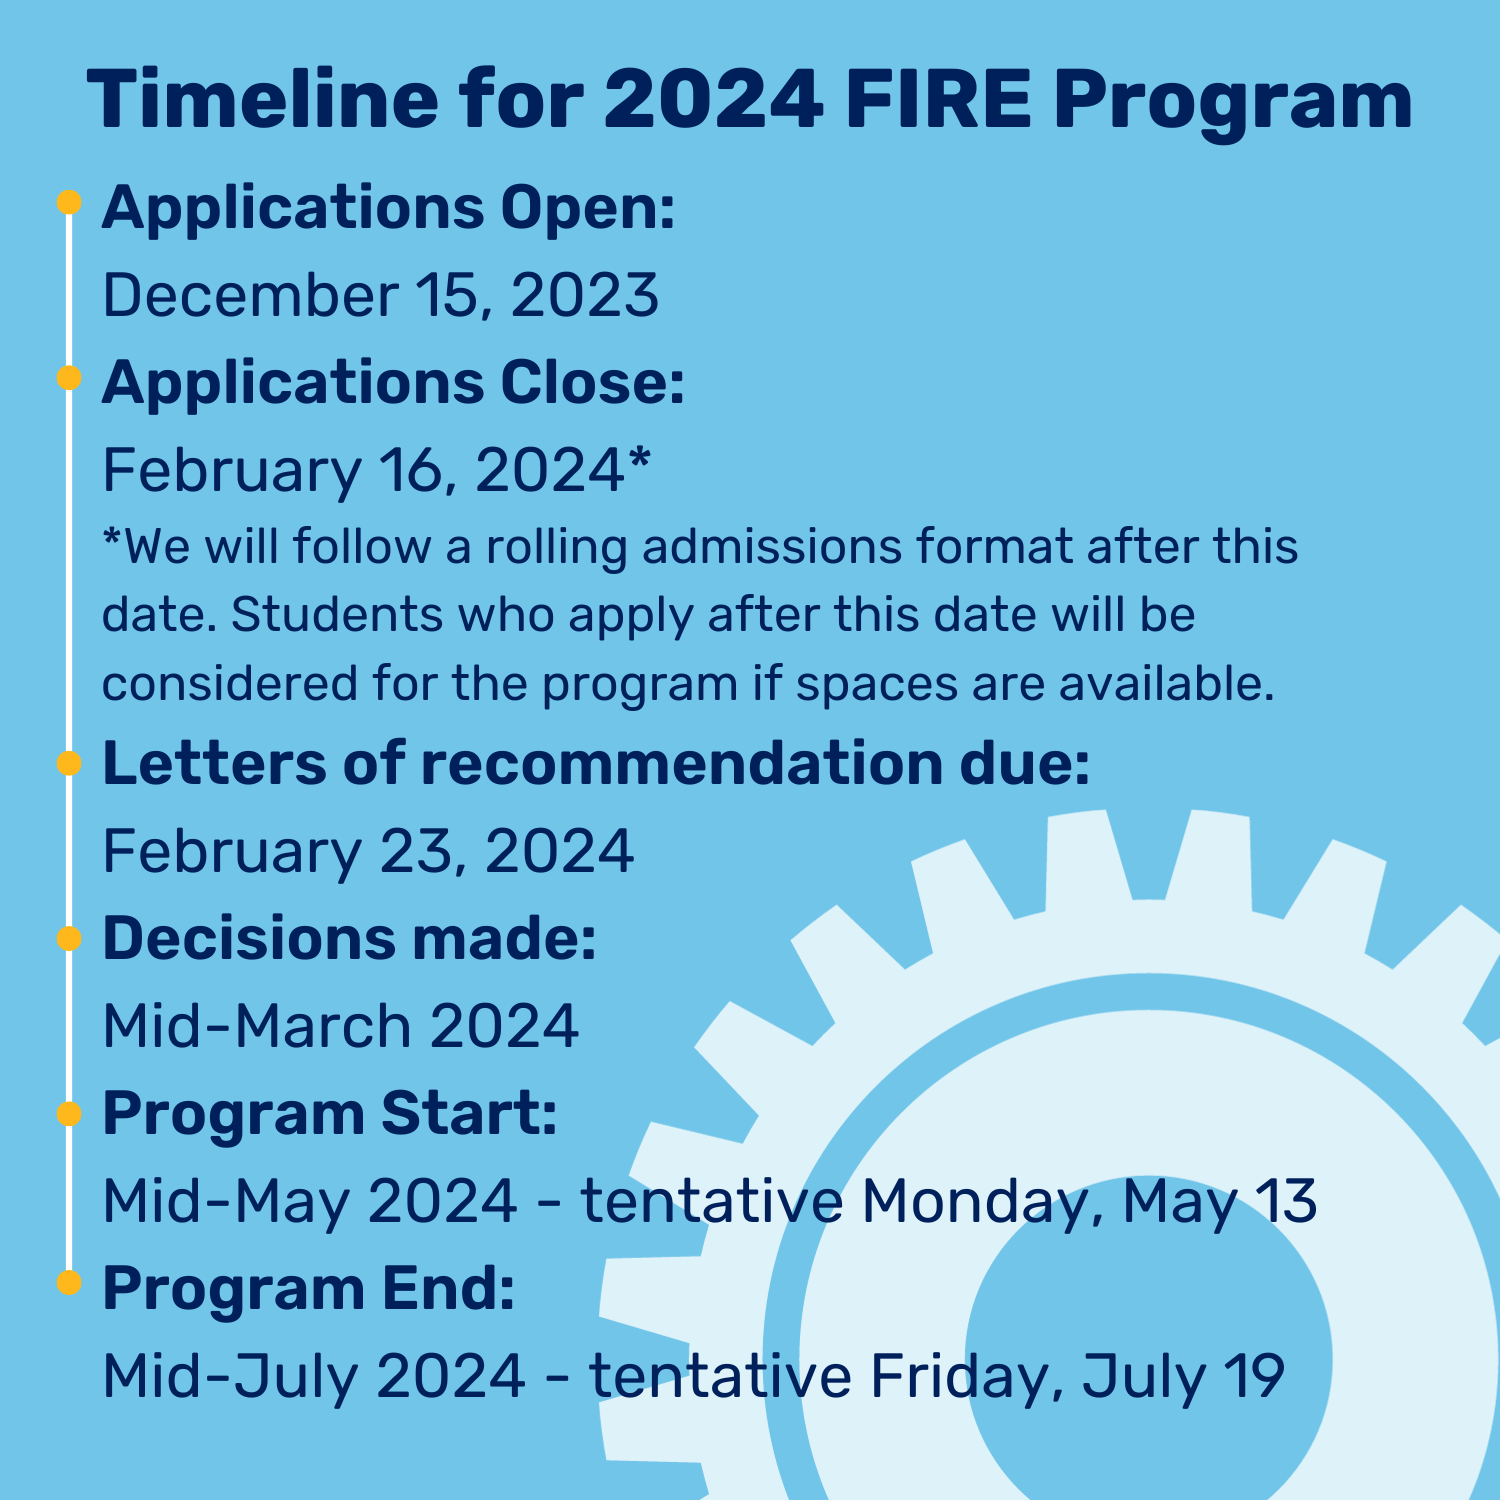 Timeline for 2024 Fire Program